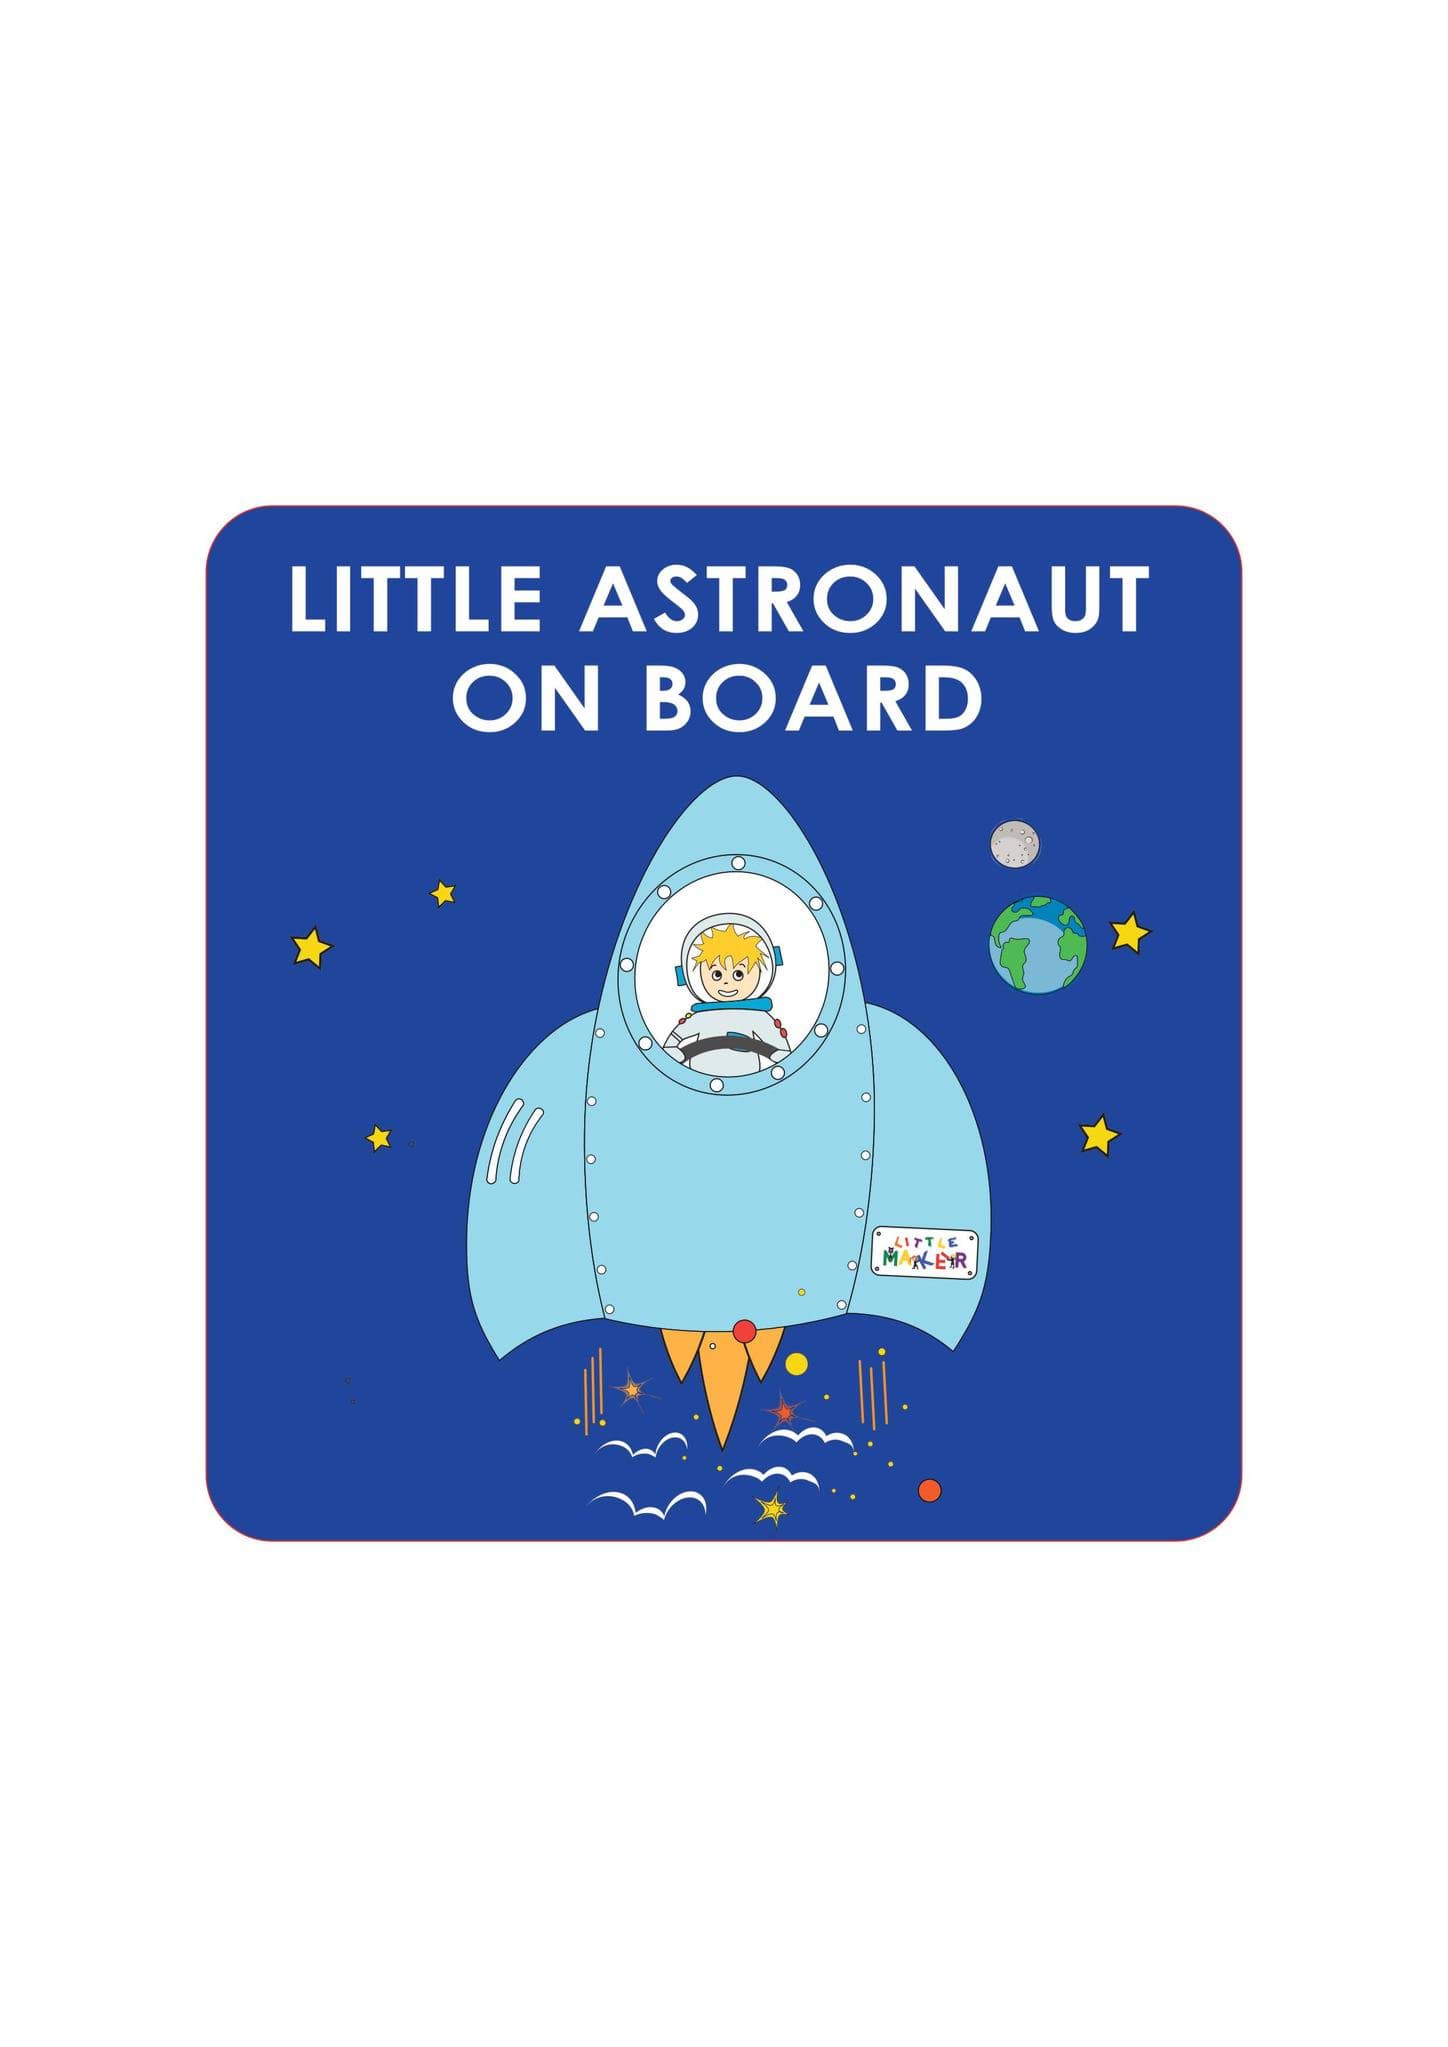 Little Astronaut on Board Araba Etiketi resmi